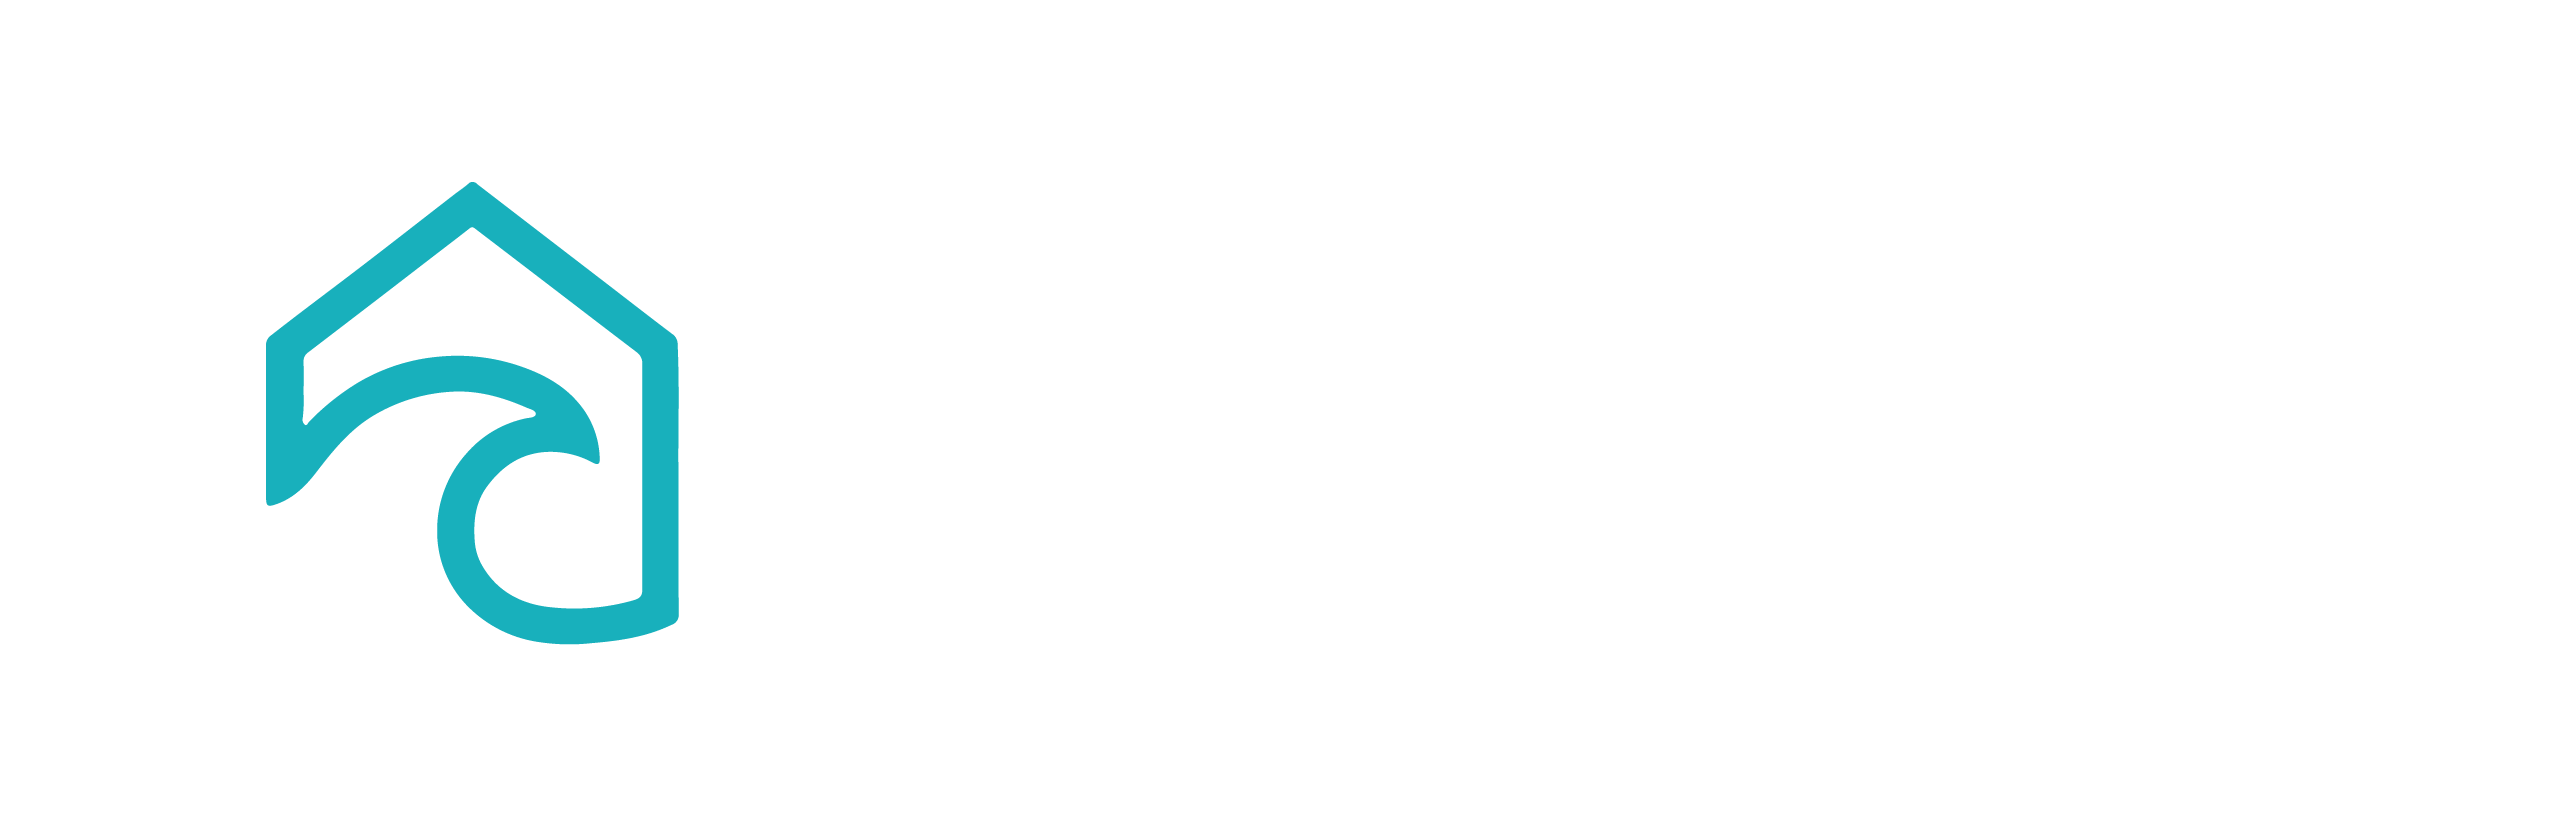 Coastal Carolina Surface Repair